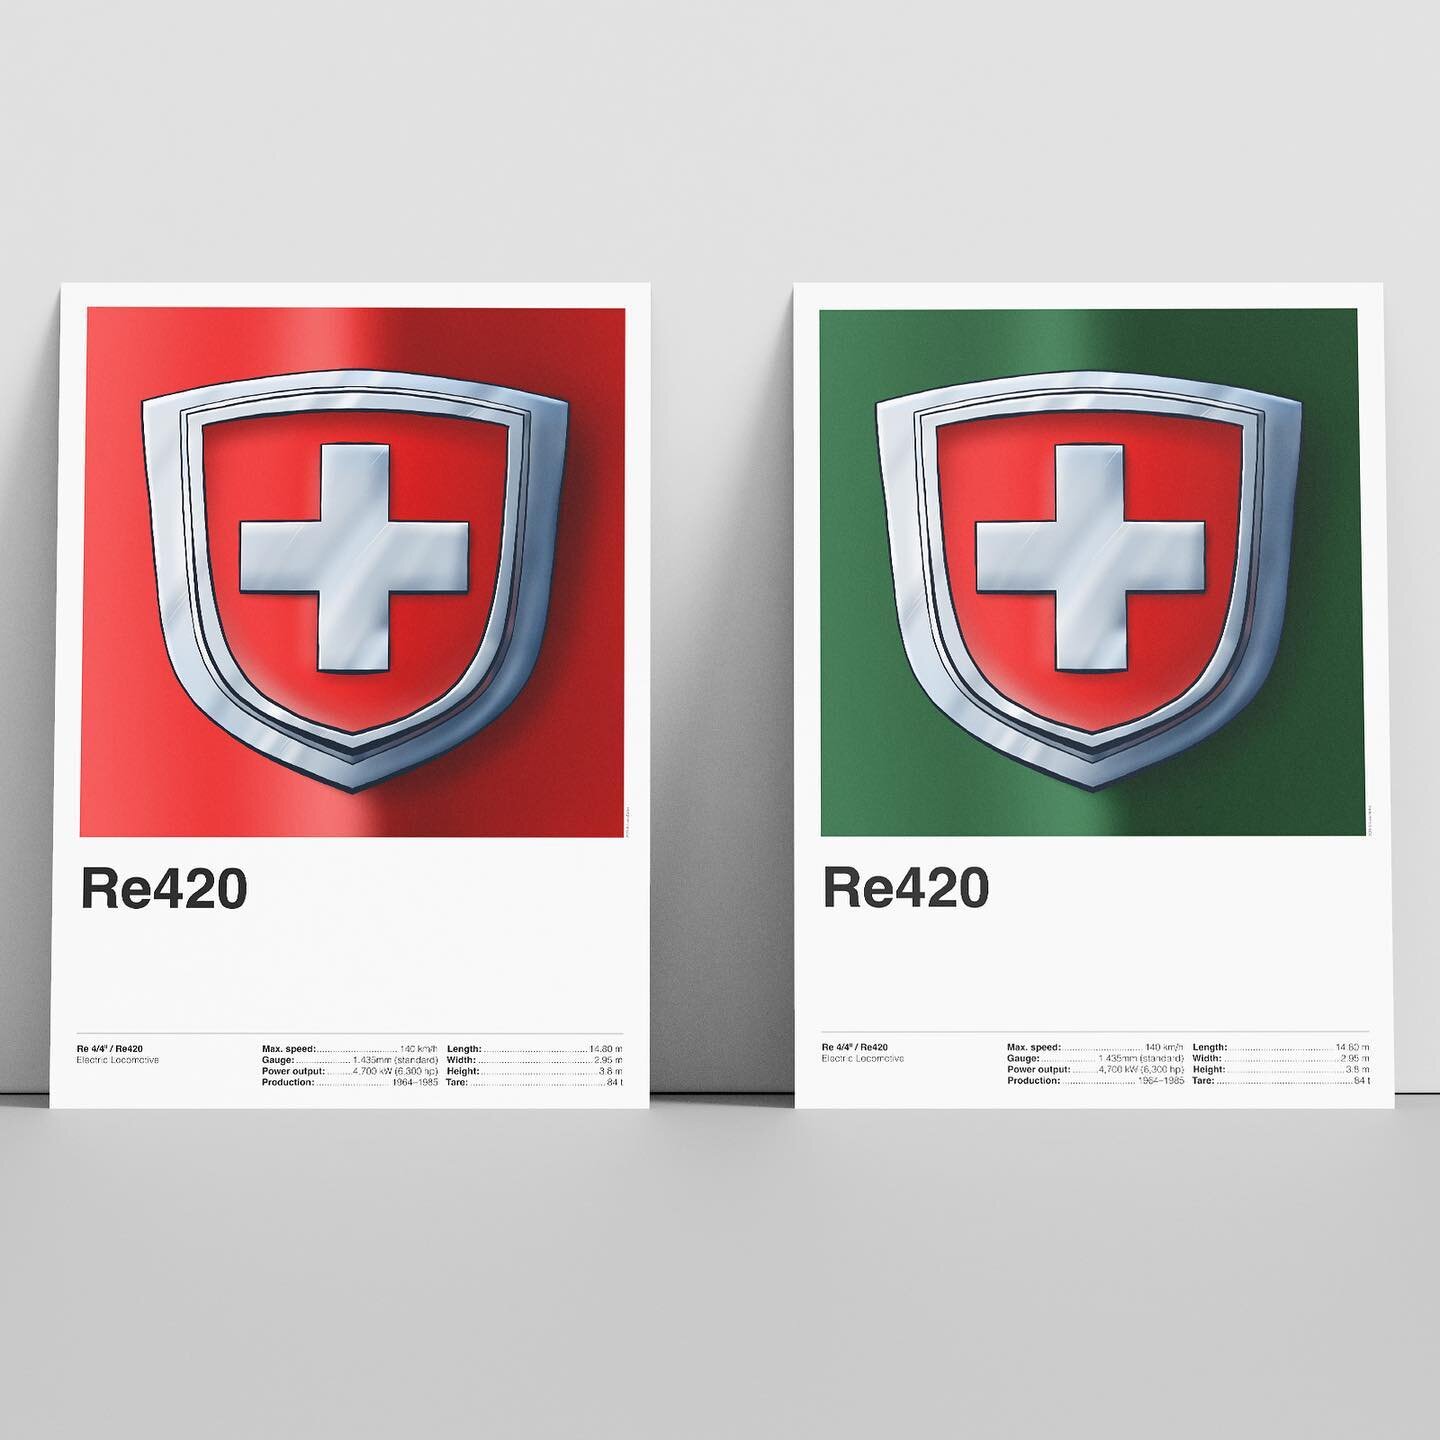 ❤️💚L&rsquo;iconique rouge ou le classique vert. Ces deux posters &agrave; l&rsquo;image de la #locomotive #Re420 sont disponibles dans ma boutique (lien en bio)
.

❤️💚The iconic red or the classic green. These two posters featuring the #Re420 #loco